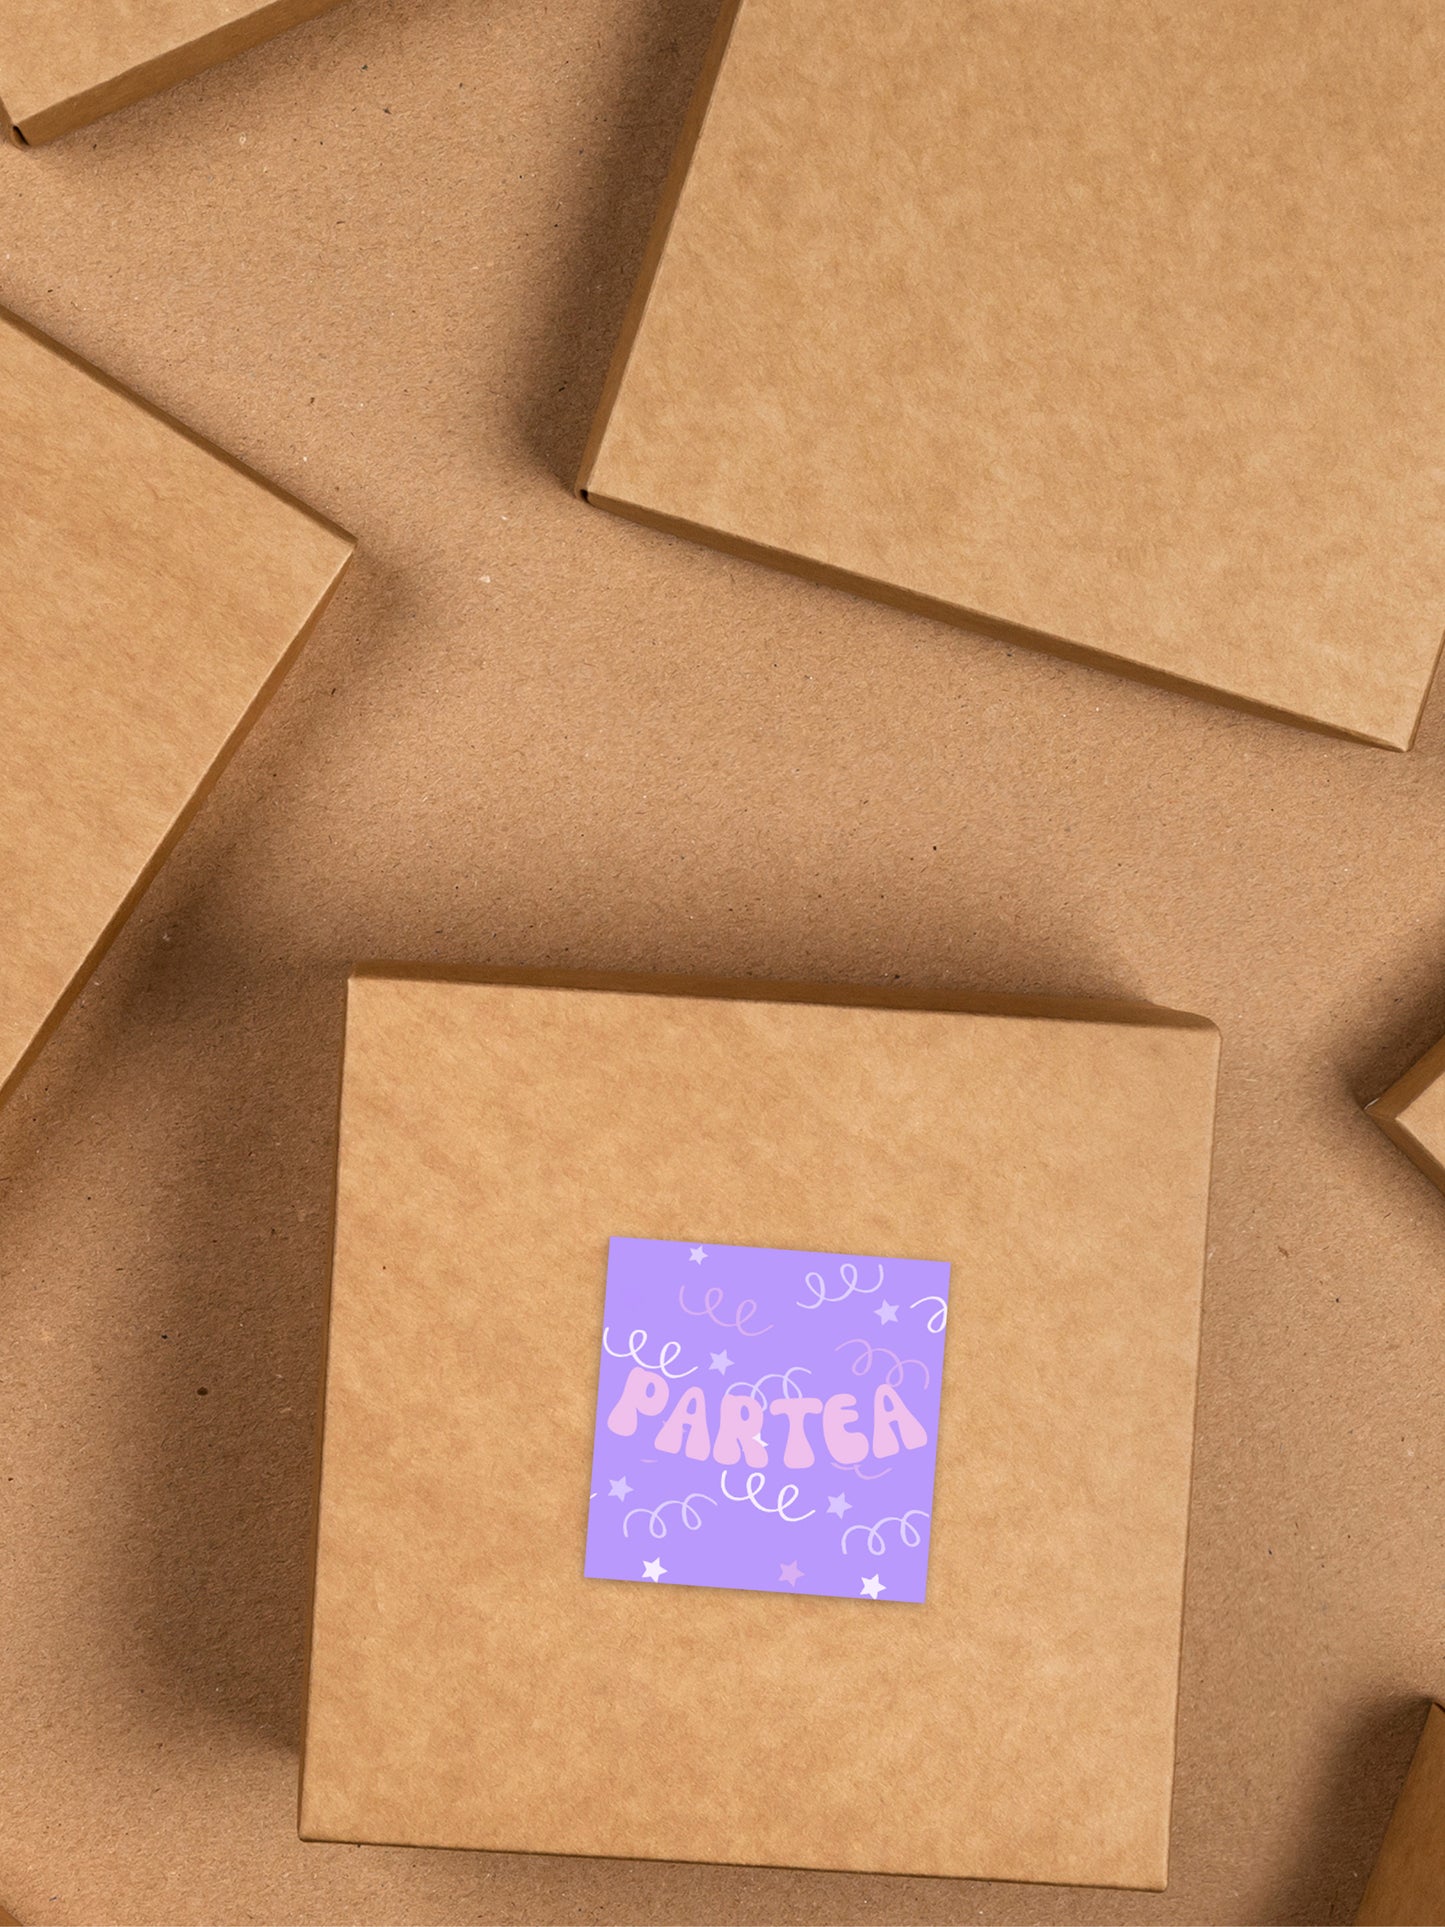 ParTea Box